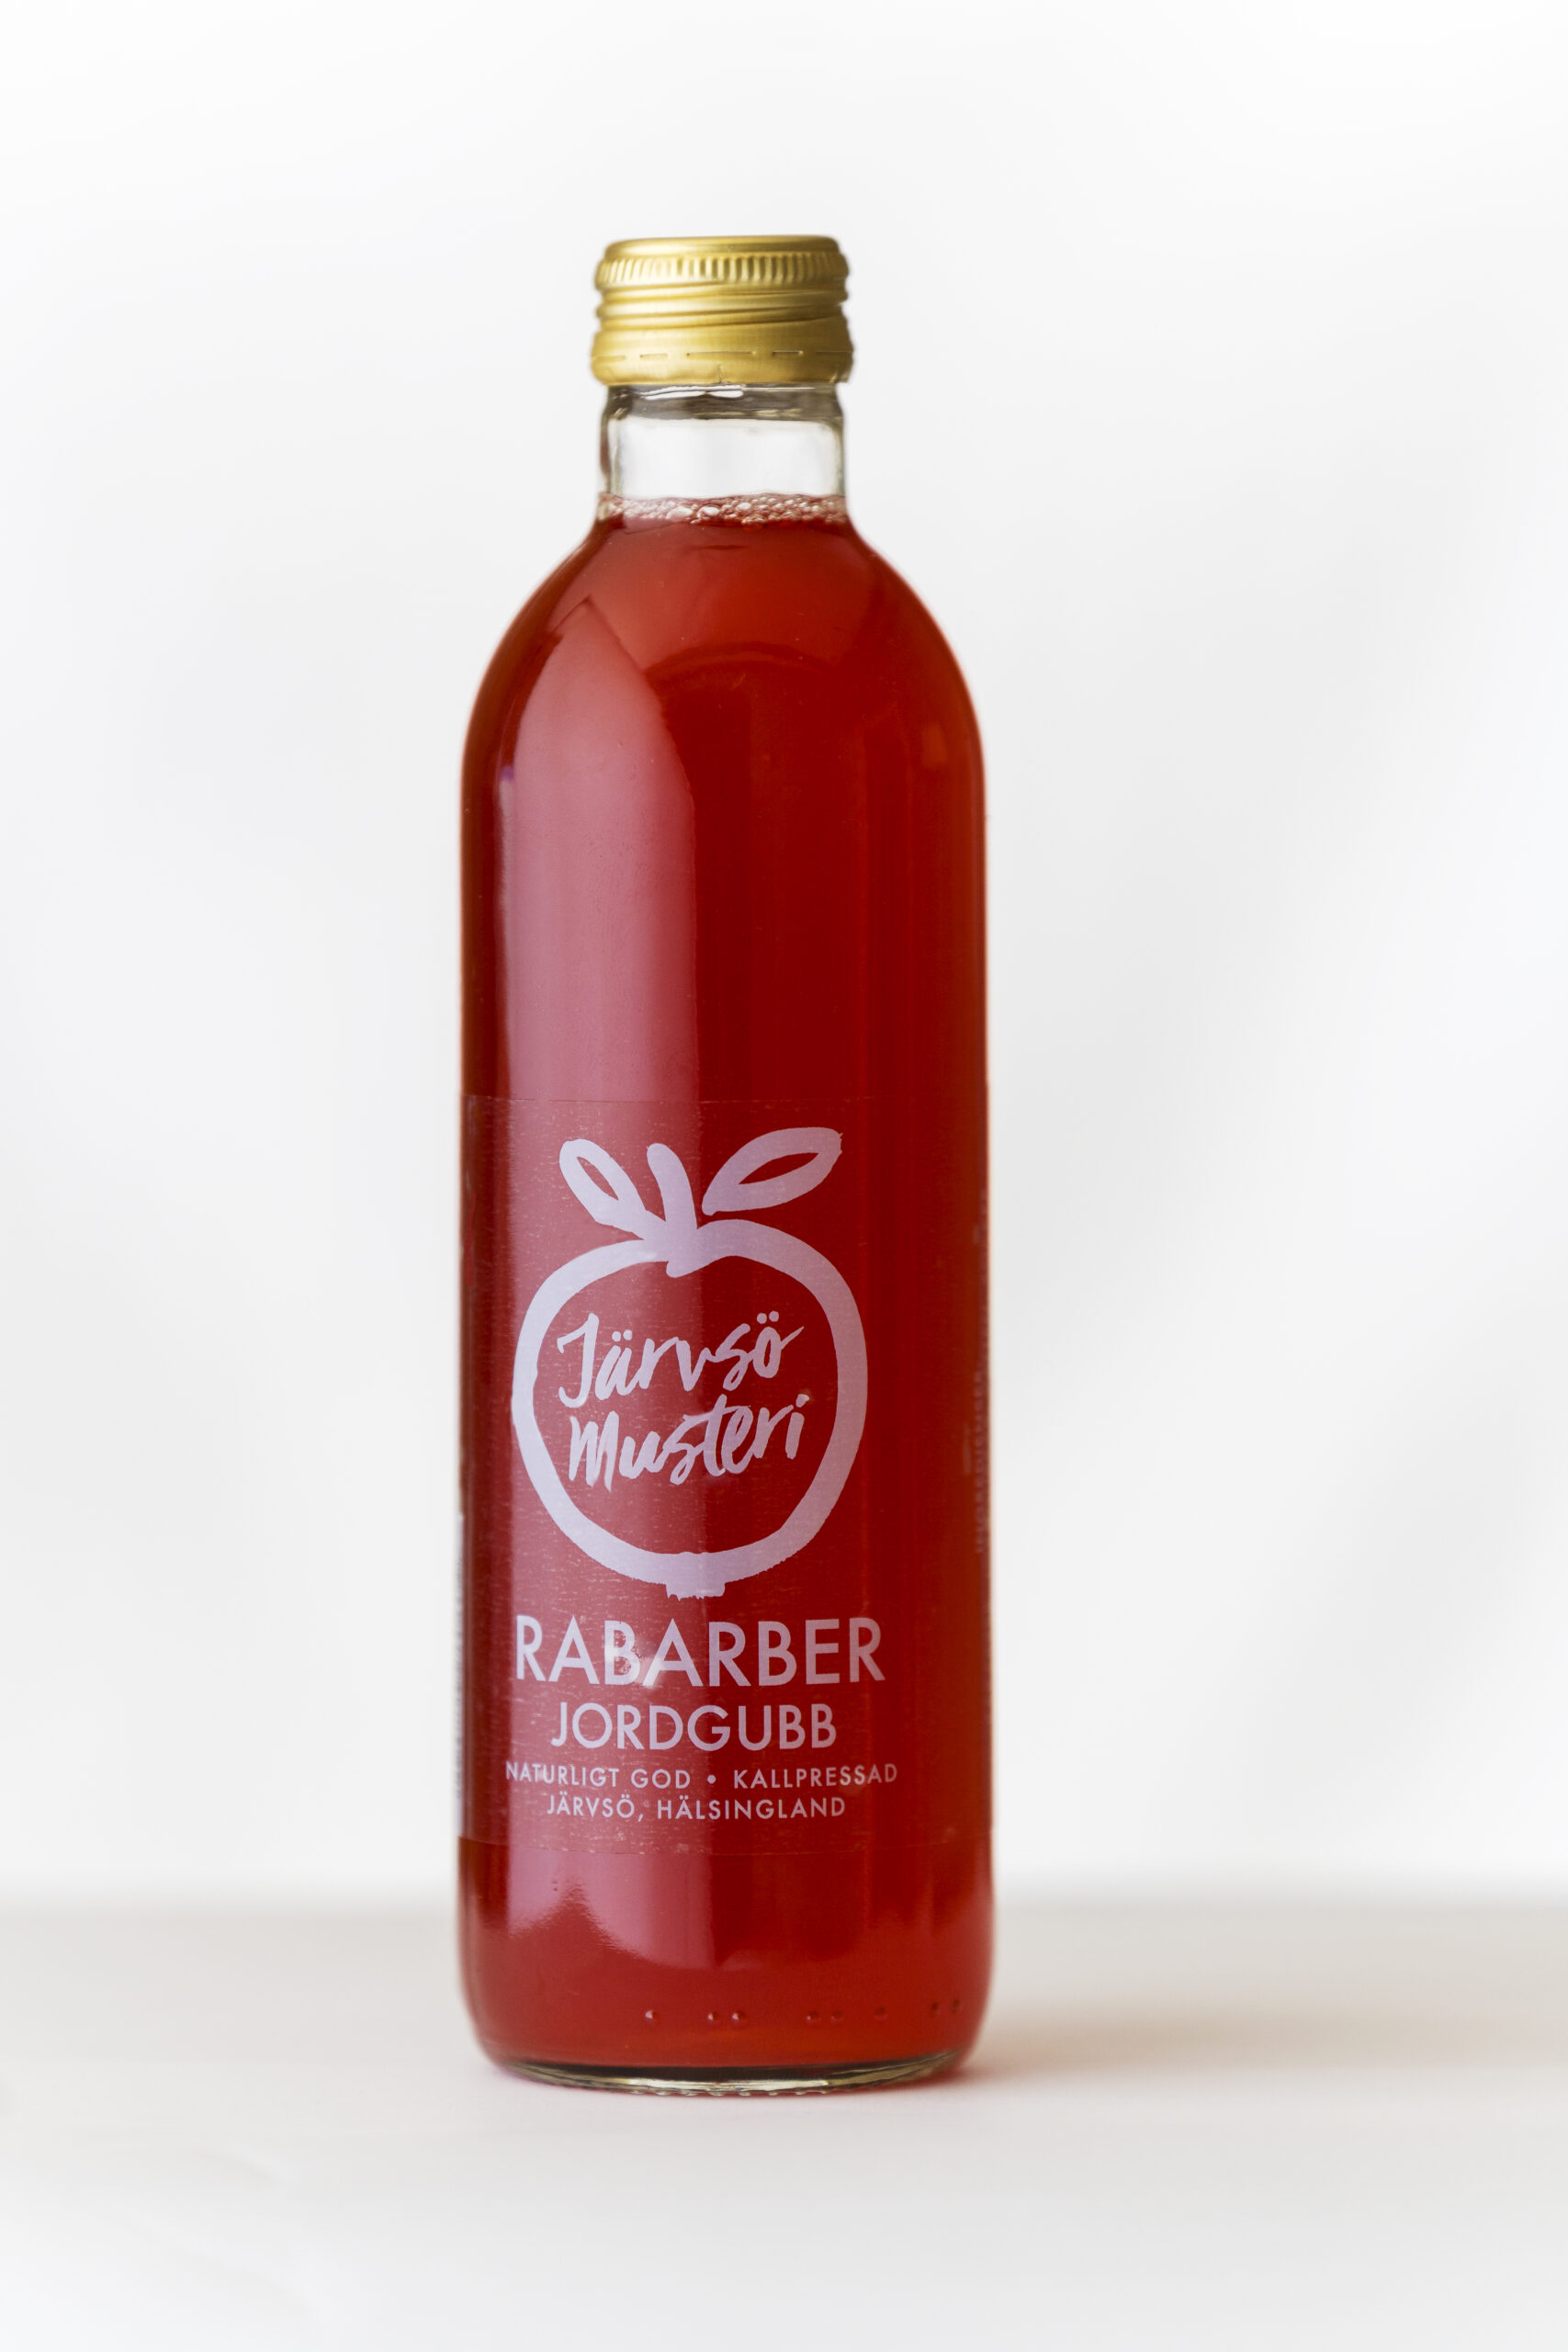 Rabarber jordgubbsdricka i flaska från Järvsö Musteri